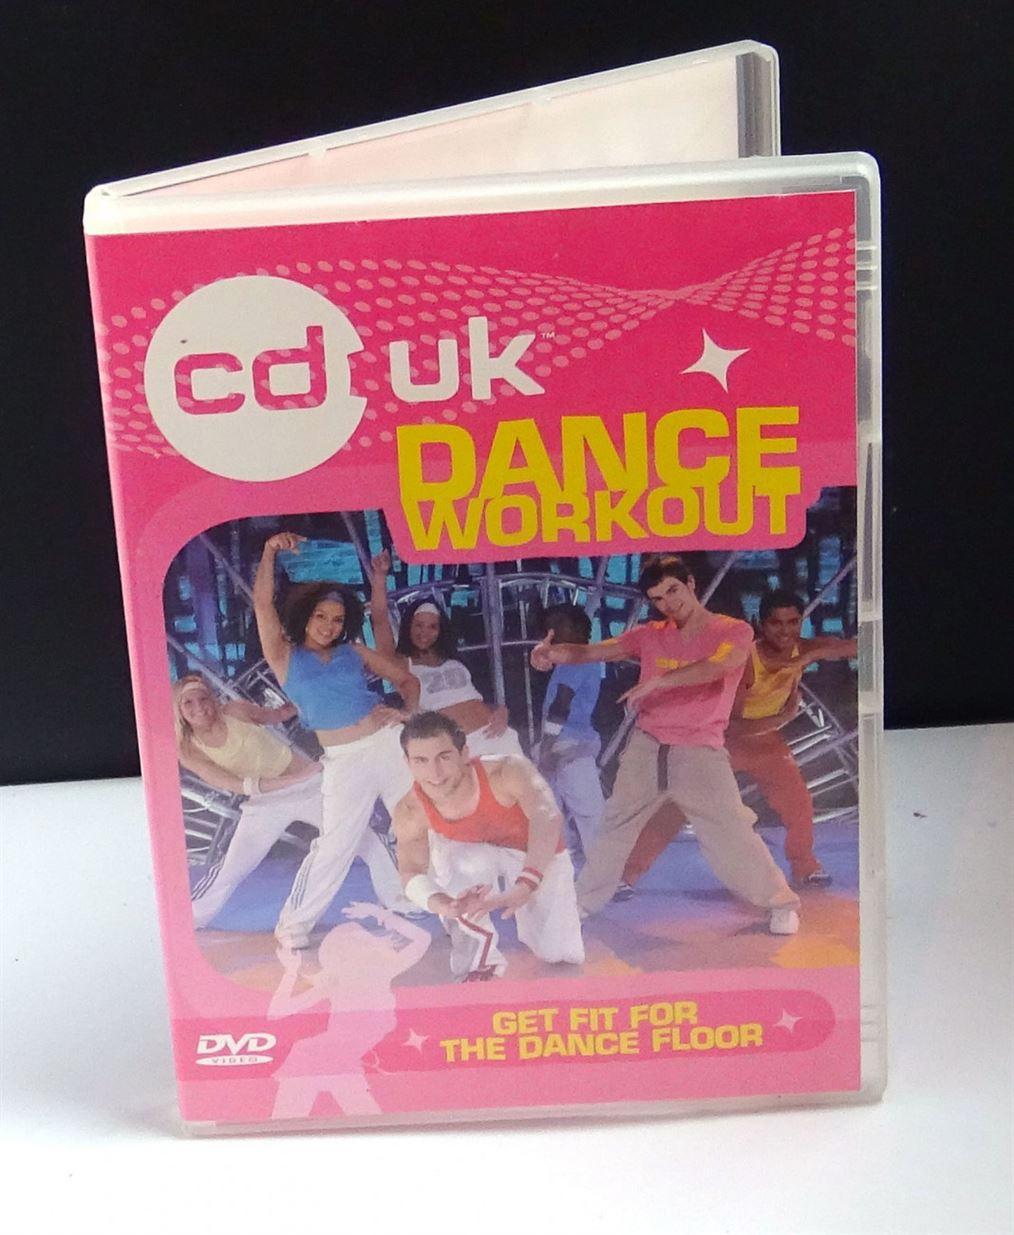 CD UK Dance Workout - DVD - region 2 - EU stock